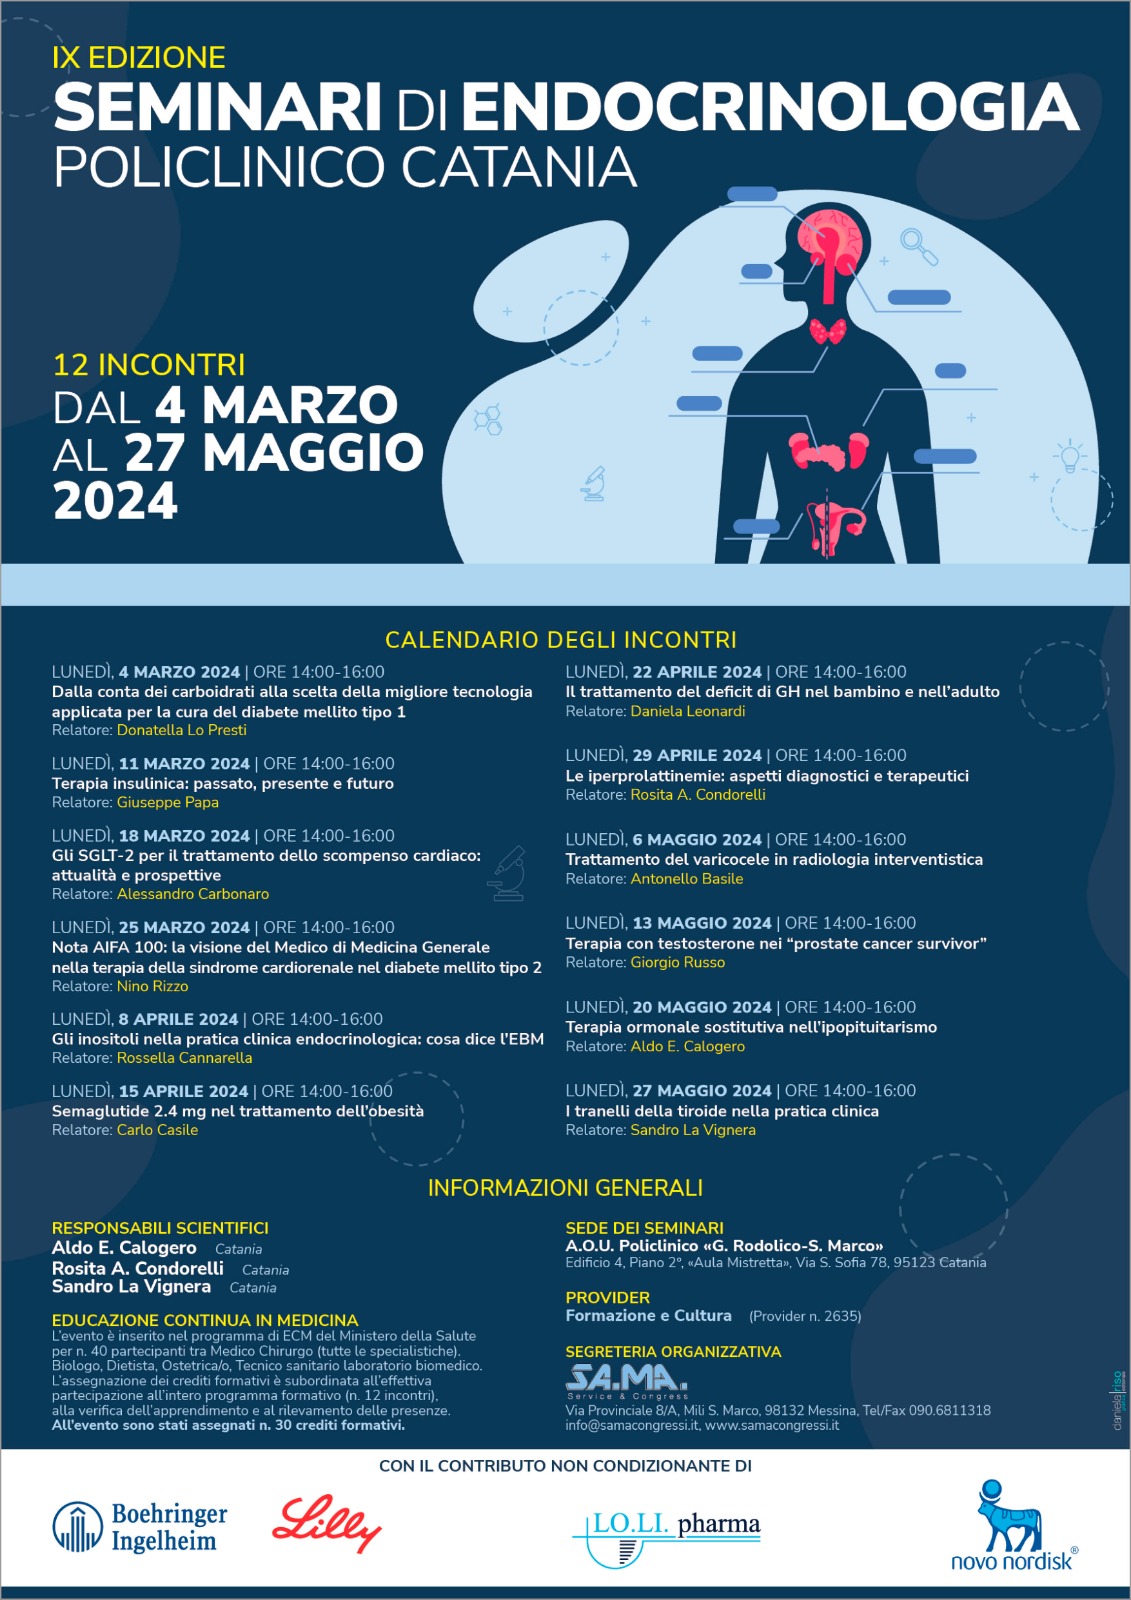 Seminari 4-27 maggio 2024 Policlinico Catania